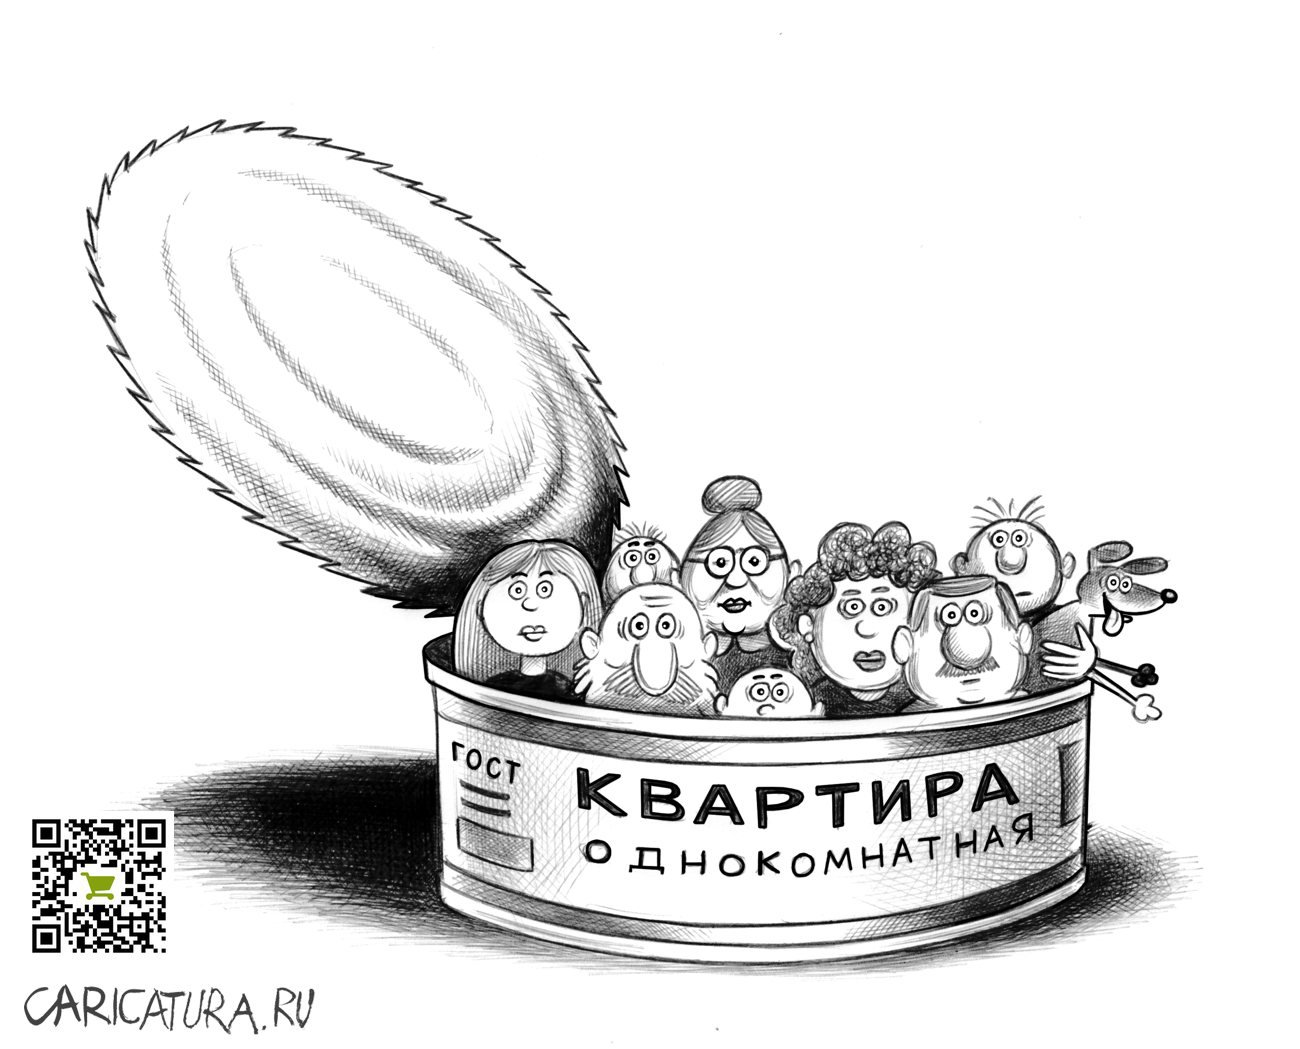 Карикатура "Квартира однокомнатная", Сергей Корсун